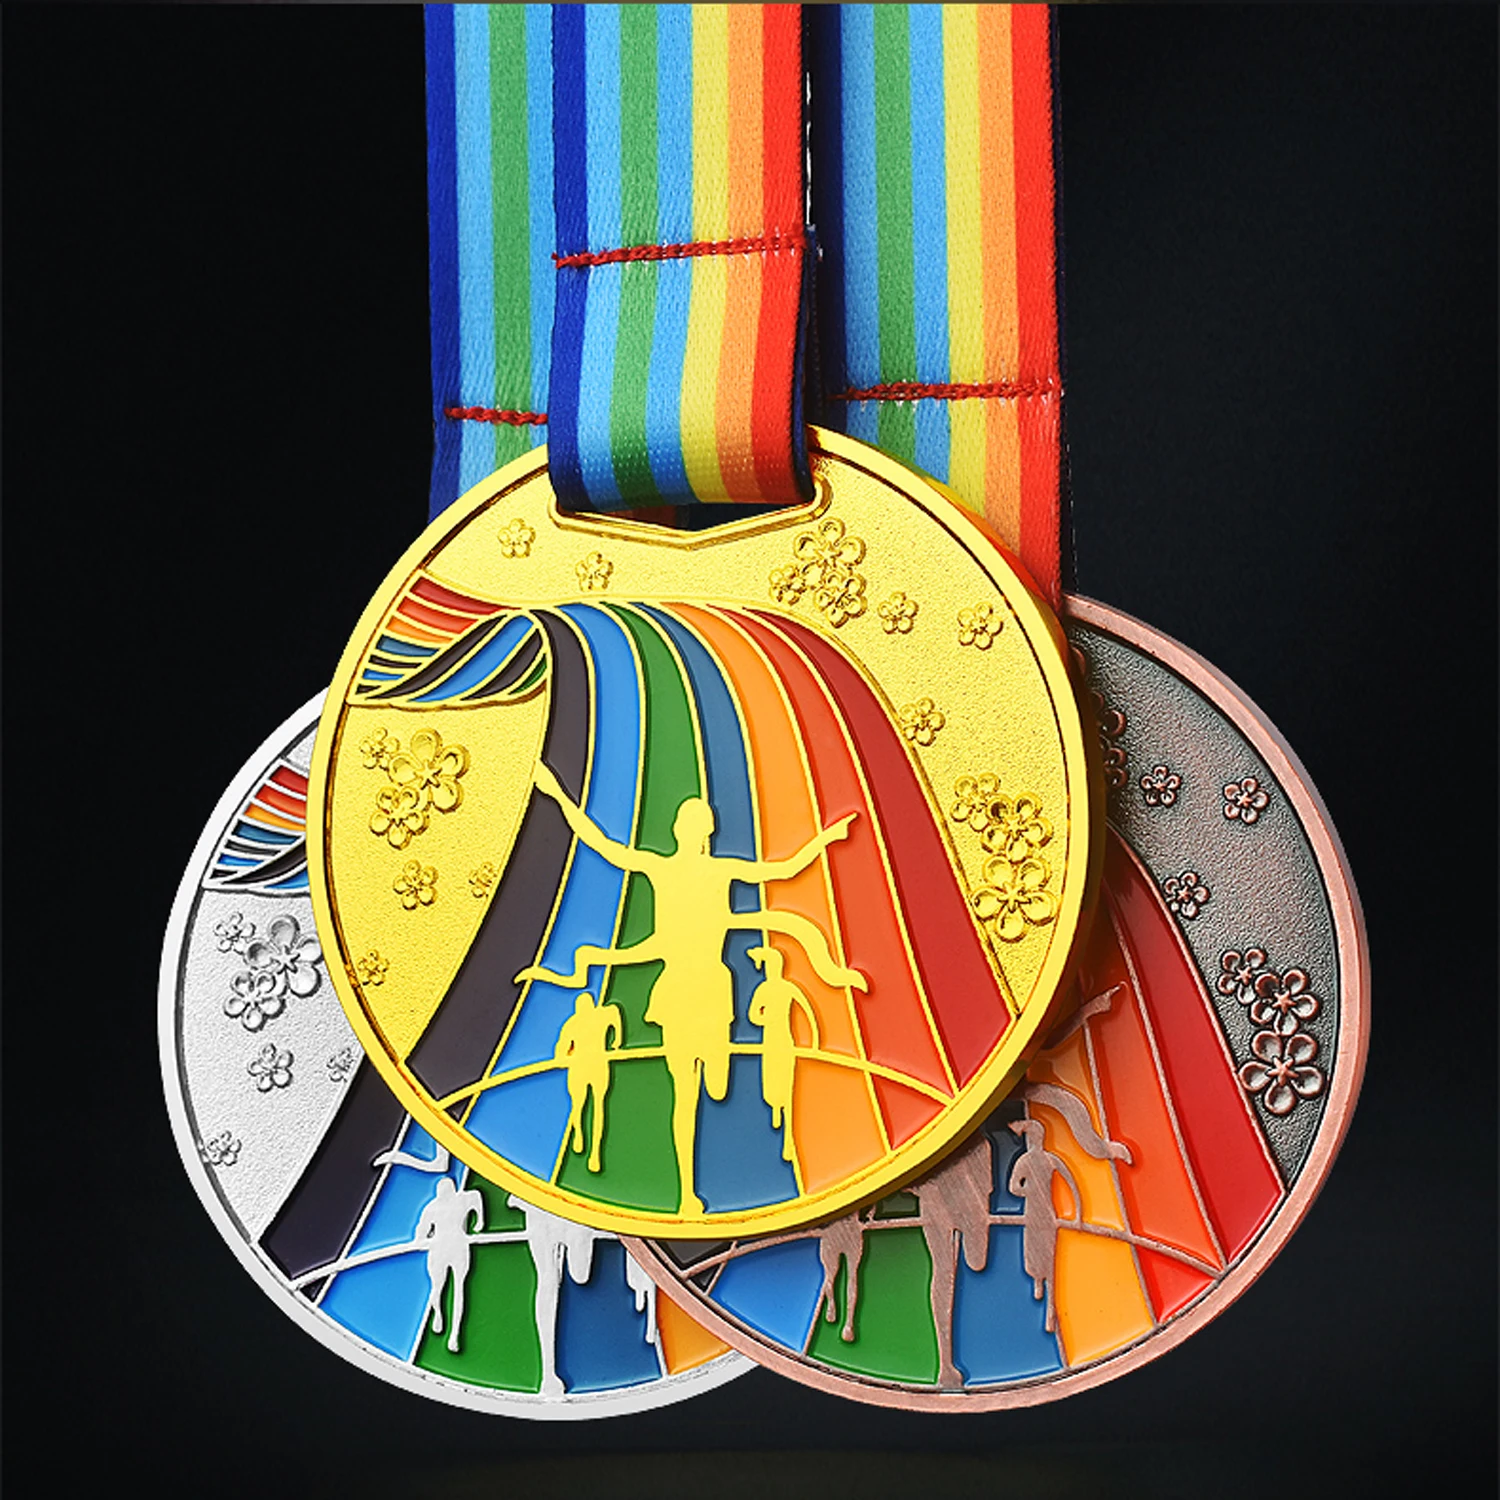 Přizpůsobit Logo Maratonu Soutěže, Ceny, Ocenění, Medaile pro Venkovní Sportovní Události